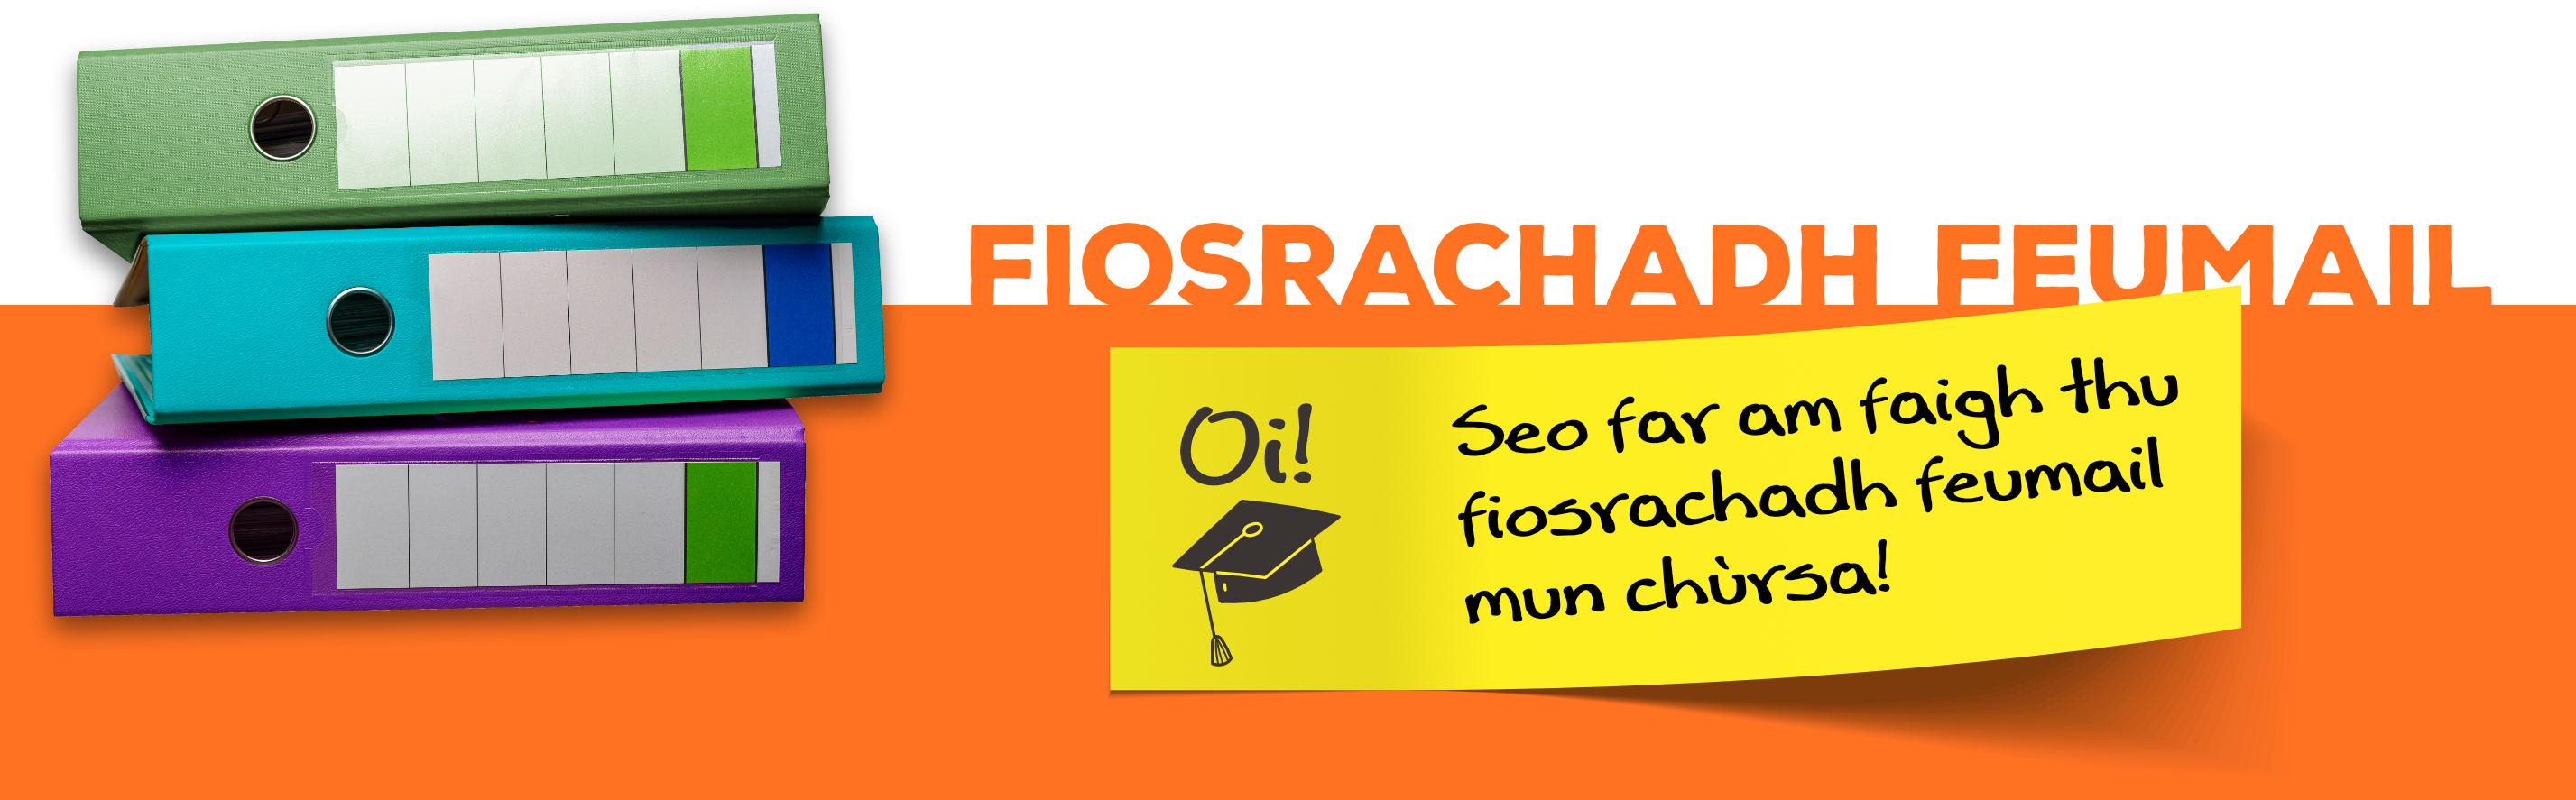 Fiosrachadh Feumail